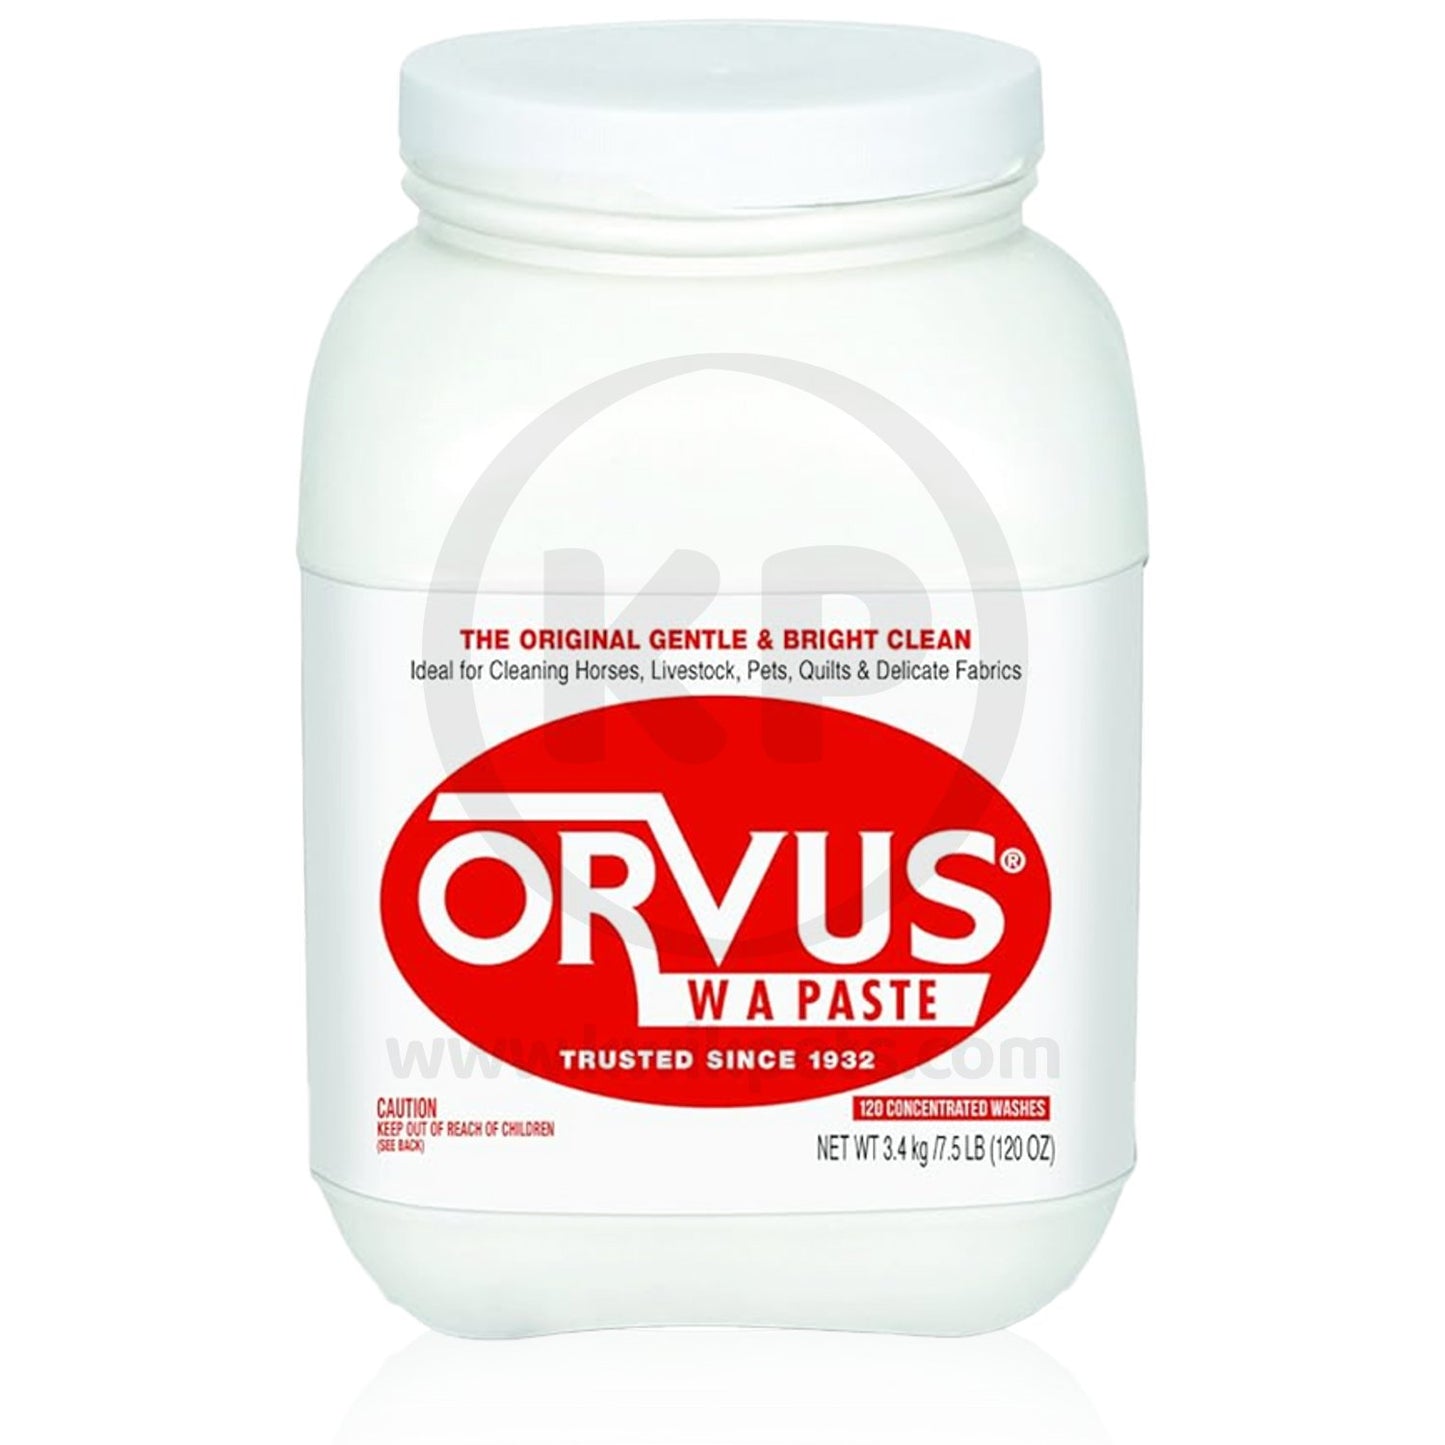 Orvus Wa Paste Cleaner - 120 Ounce, Orvus